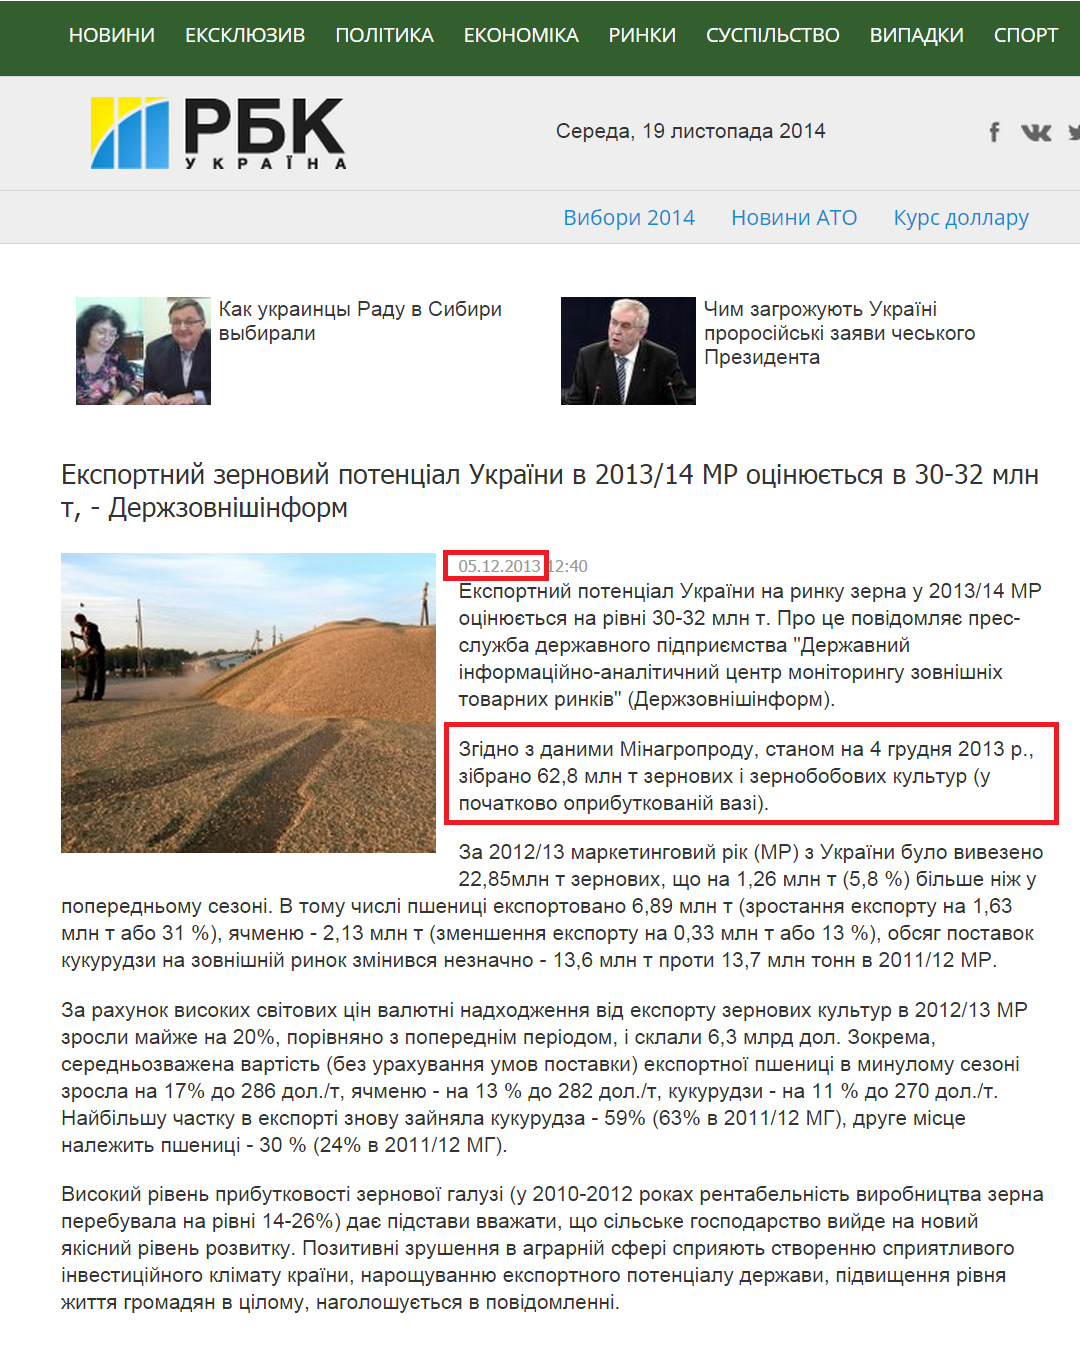 http://apk.rbc.ua/ukr/eksportnyy-zernovoy-potentsial-ukrainy-v-2013-14-mg-otsenivaetsya-05122013124000